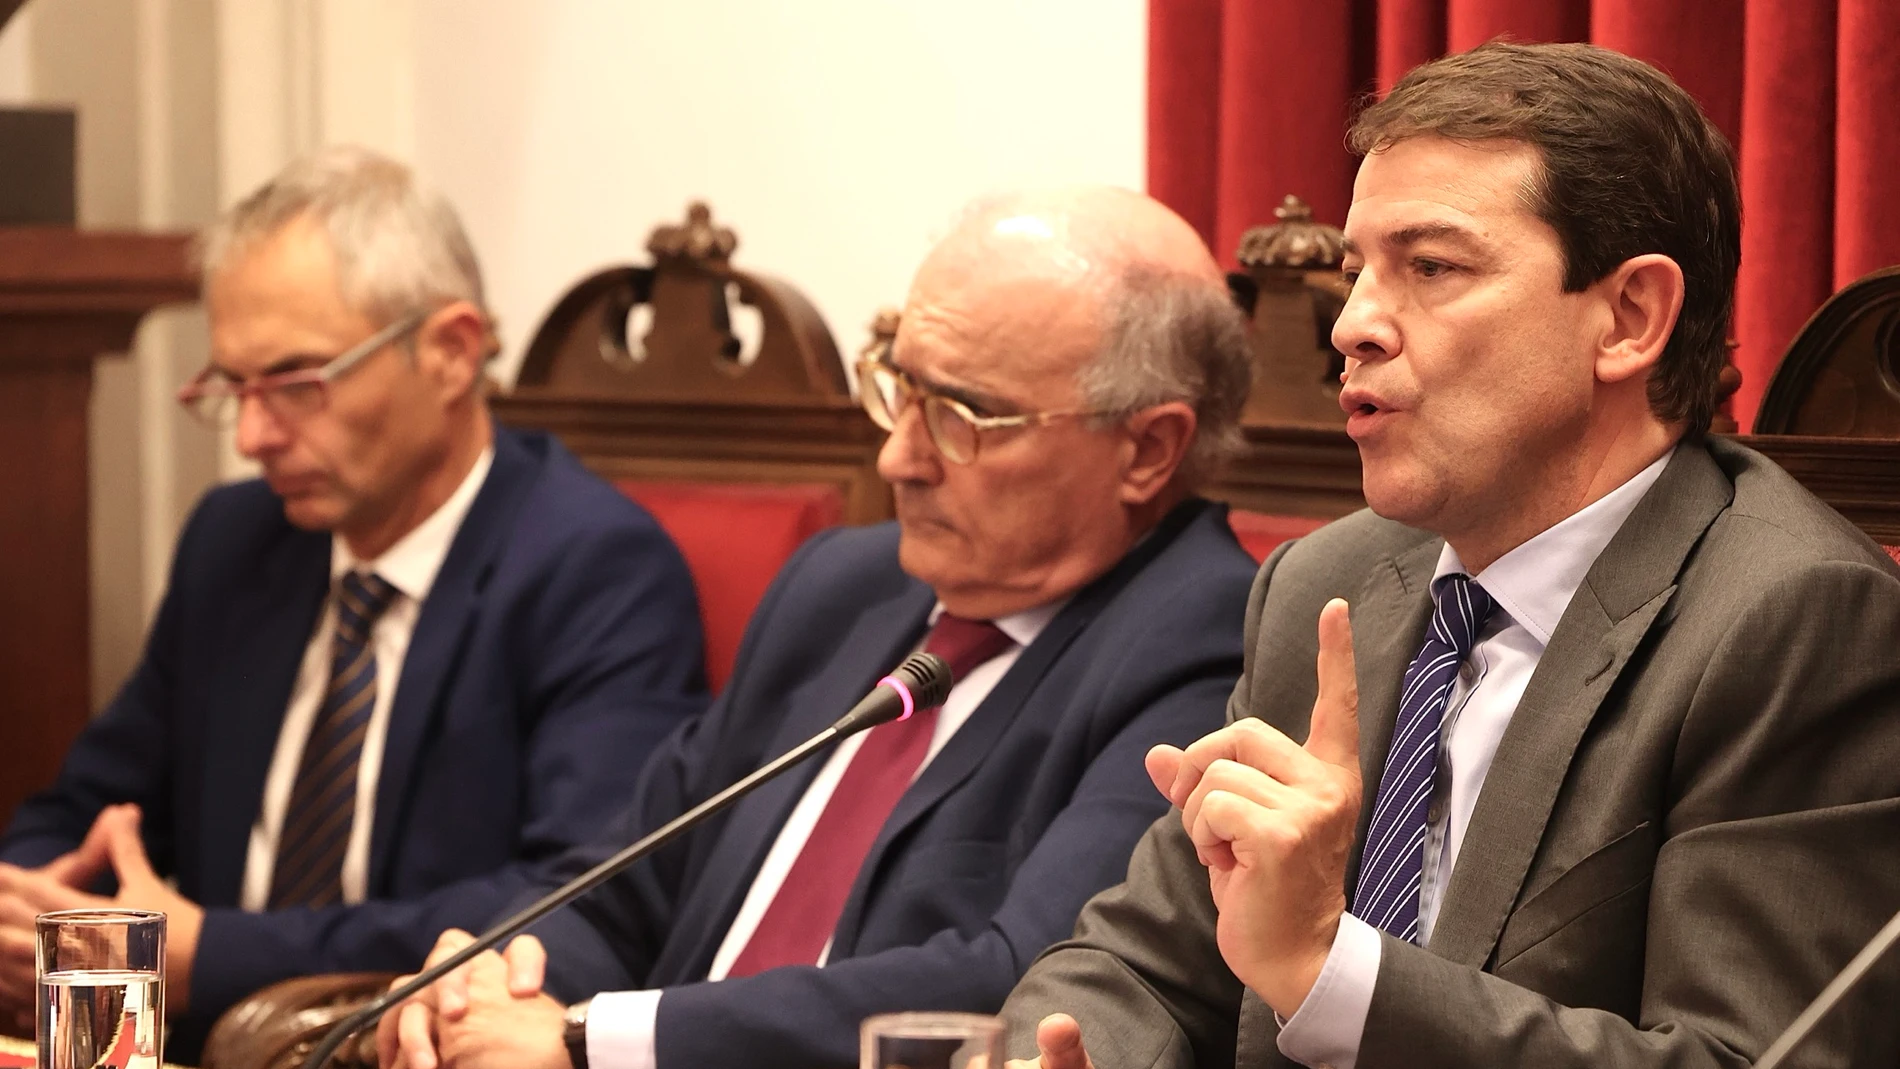 El presidente de la Junta de Castilla y León, Alfonso Fernández Mañueco, interviene en la presentación del libro "Ley Perpetua de Ávila", organizado por la Real Academia de Ciencias Morales y Políticas